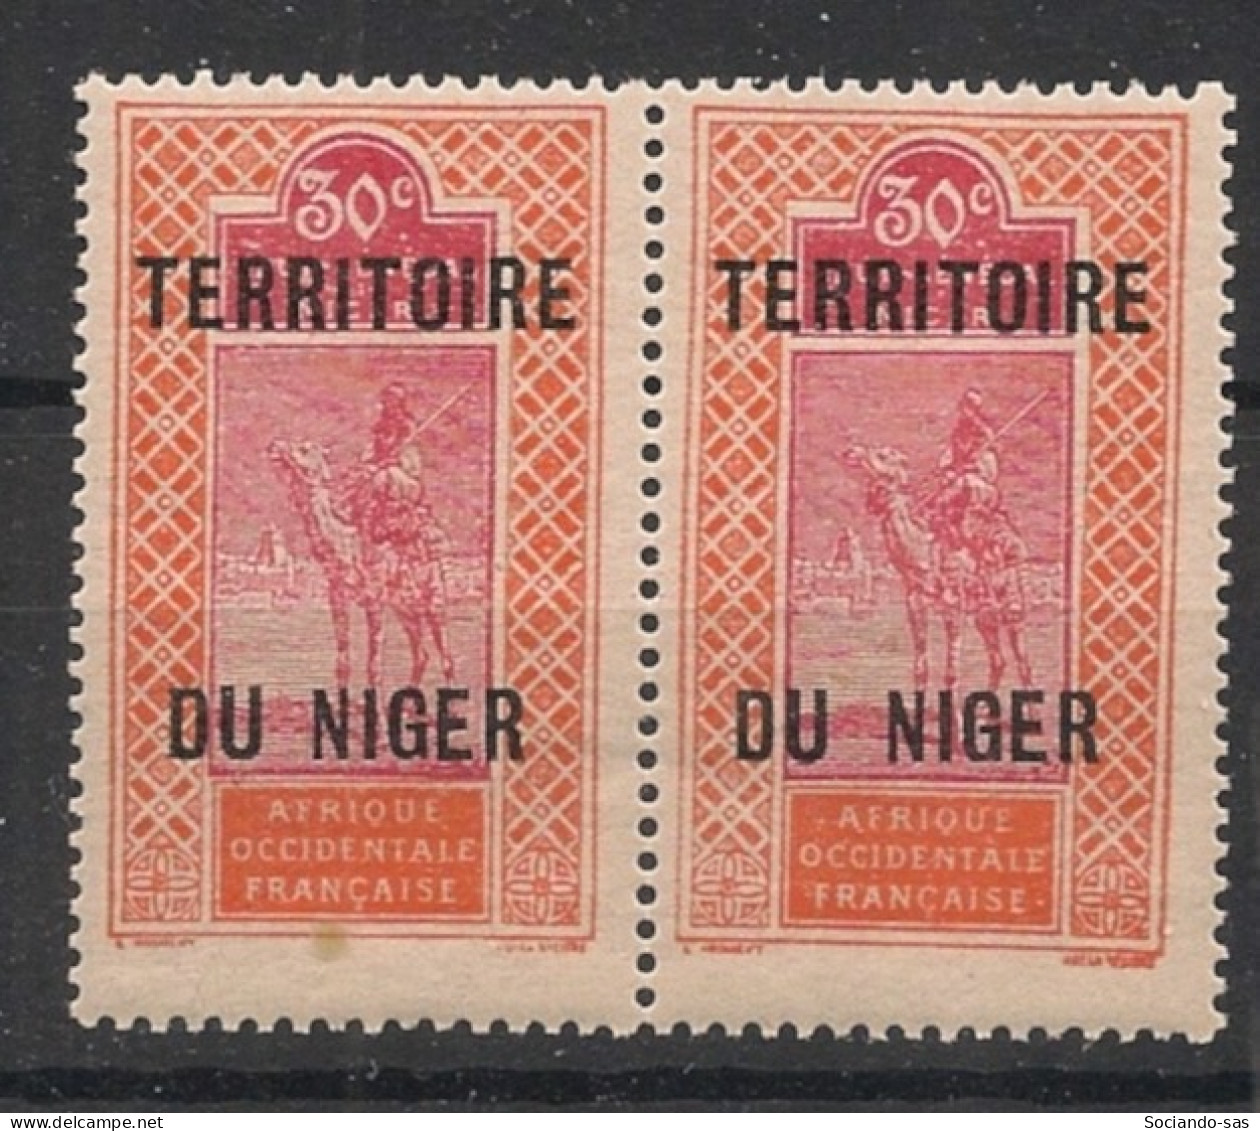 NIGER - 1921-22 - N°YT 9Aa - Targui 30c Rouge - VARIETE DU Et NIGER Espacés T.a.n. - Neuf Luxe ** / MNH / Postfrisch - Ongebruikt